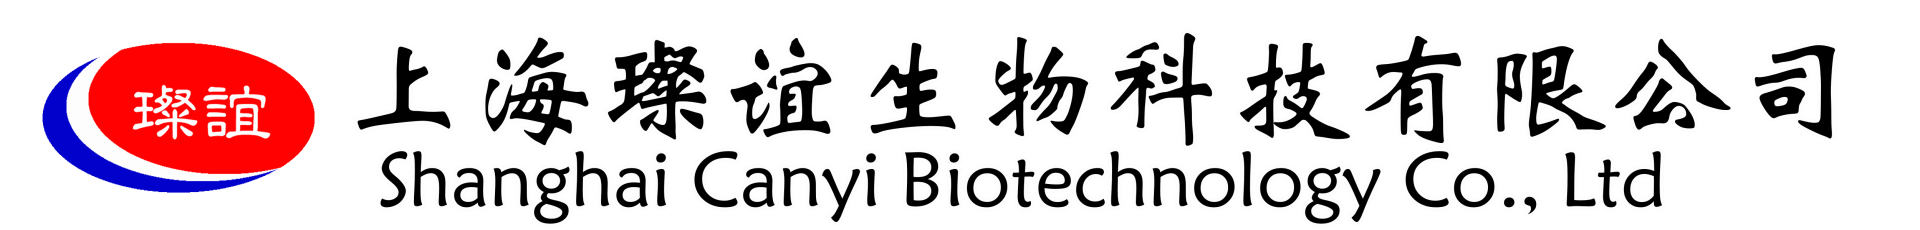 上海璨谊生物科技有限公司